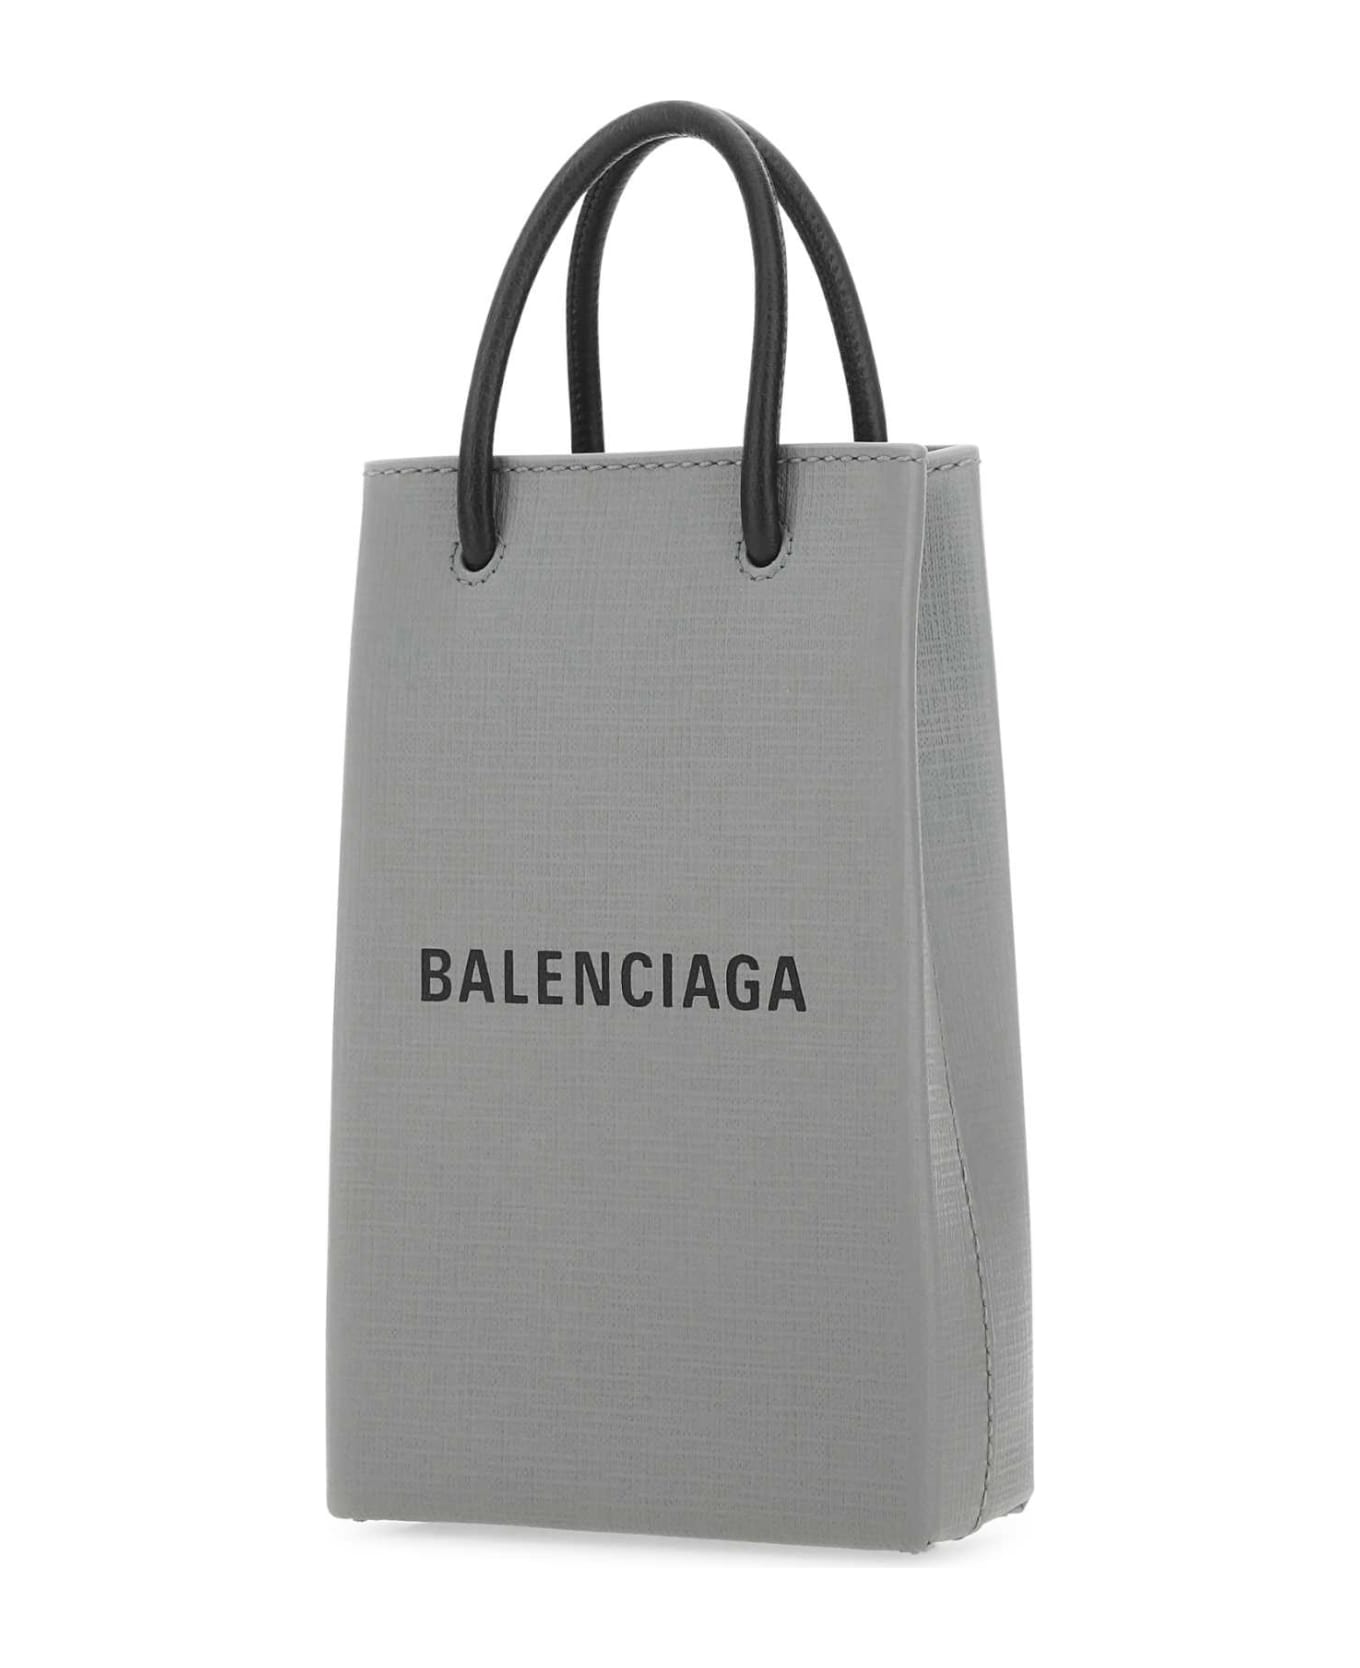 Balenciaga Grey Leather Phone Case - 1160